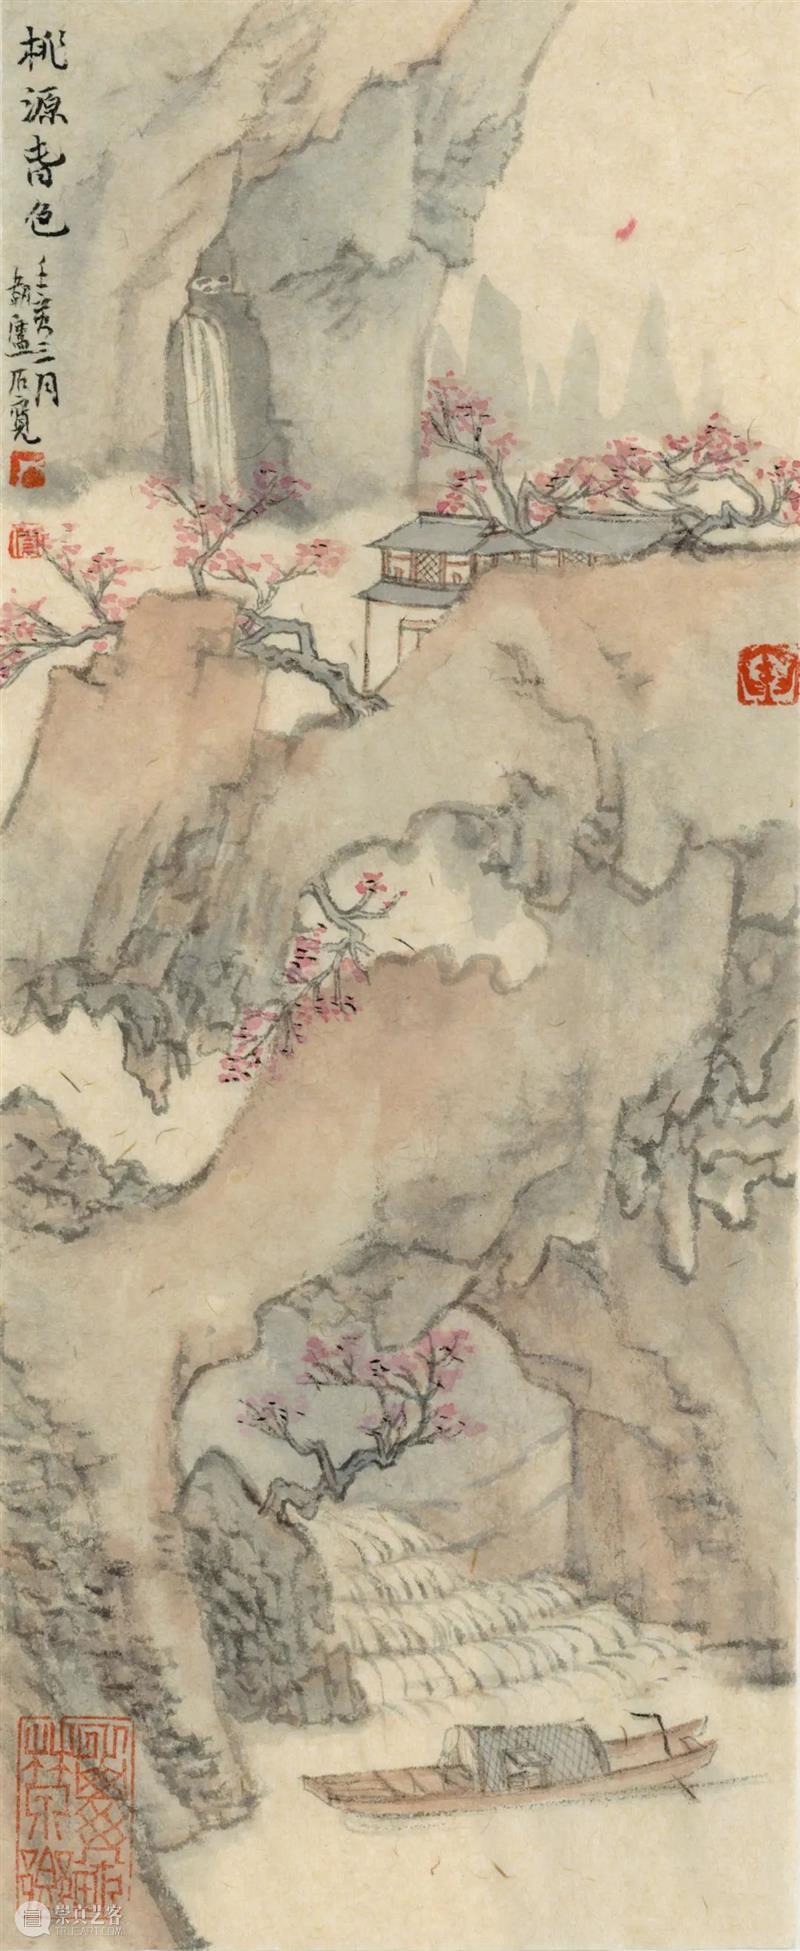 6月4日视觉沙龙|如何看懂中国山水画？湖美教授一讲你就懂了 崇真艺客